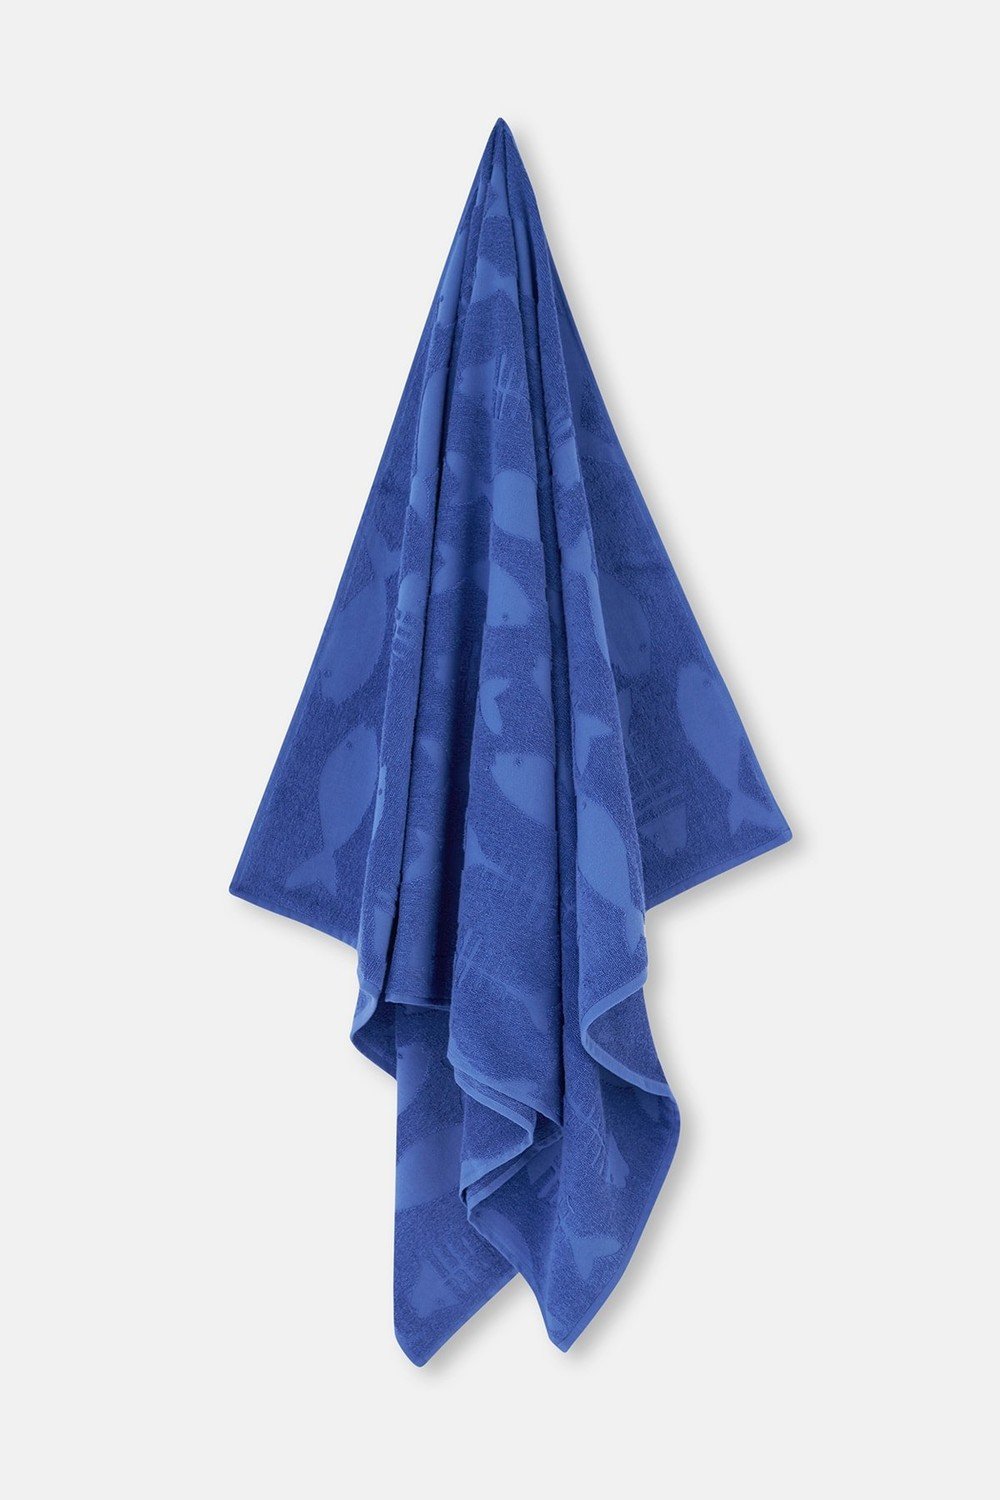 Dagi Beach Towel - Blue - Casual